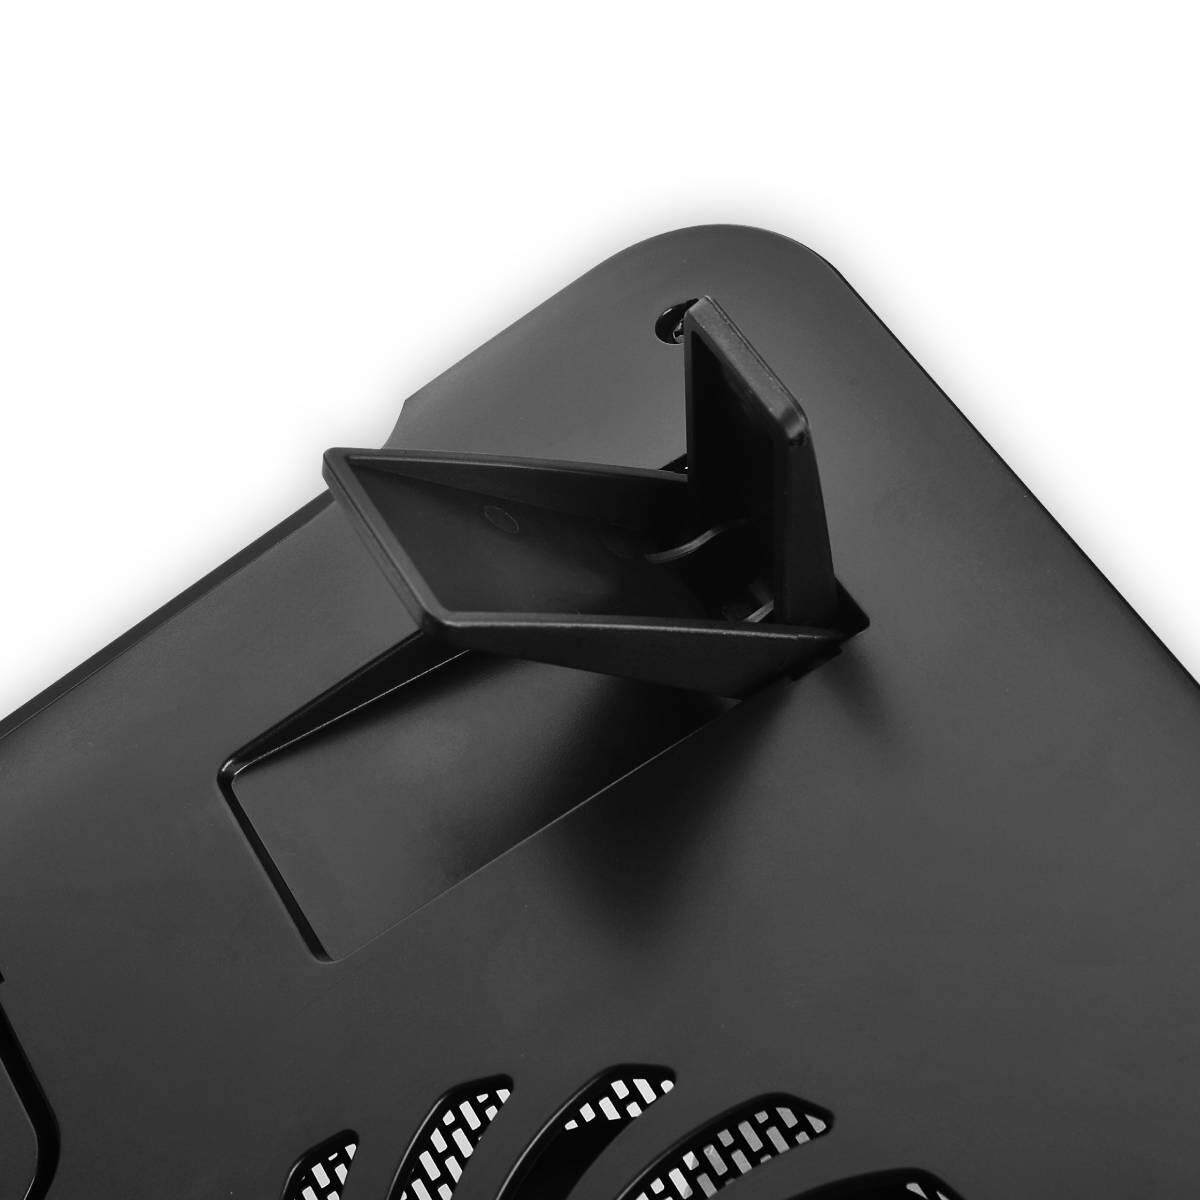 Cooler Master Notepal i200 Silent 140mm Fan Ergonomic Mesh USB 2.0 Notebook Cooler for up to 15.6